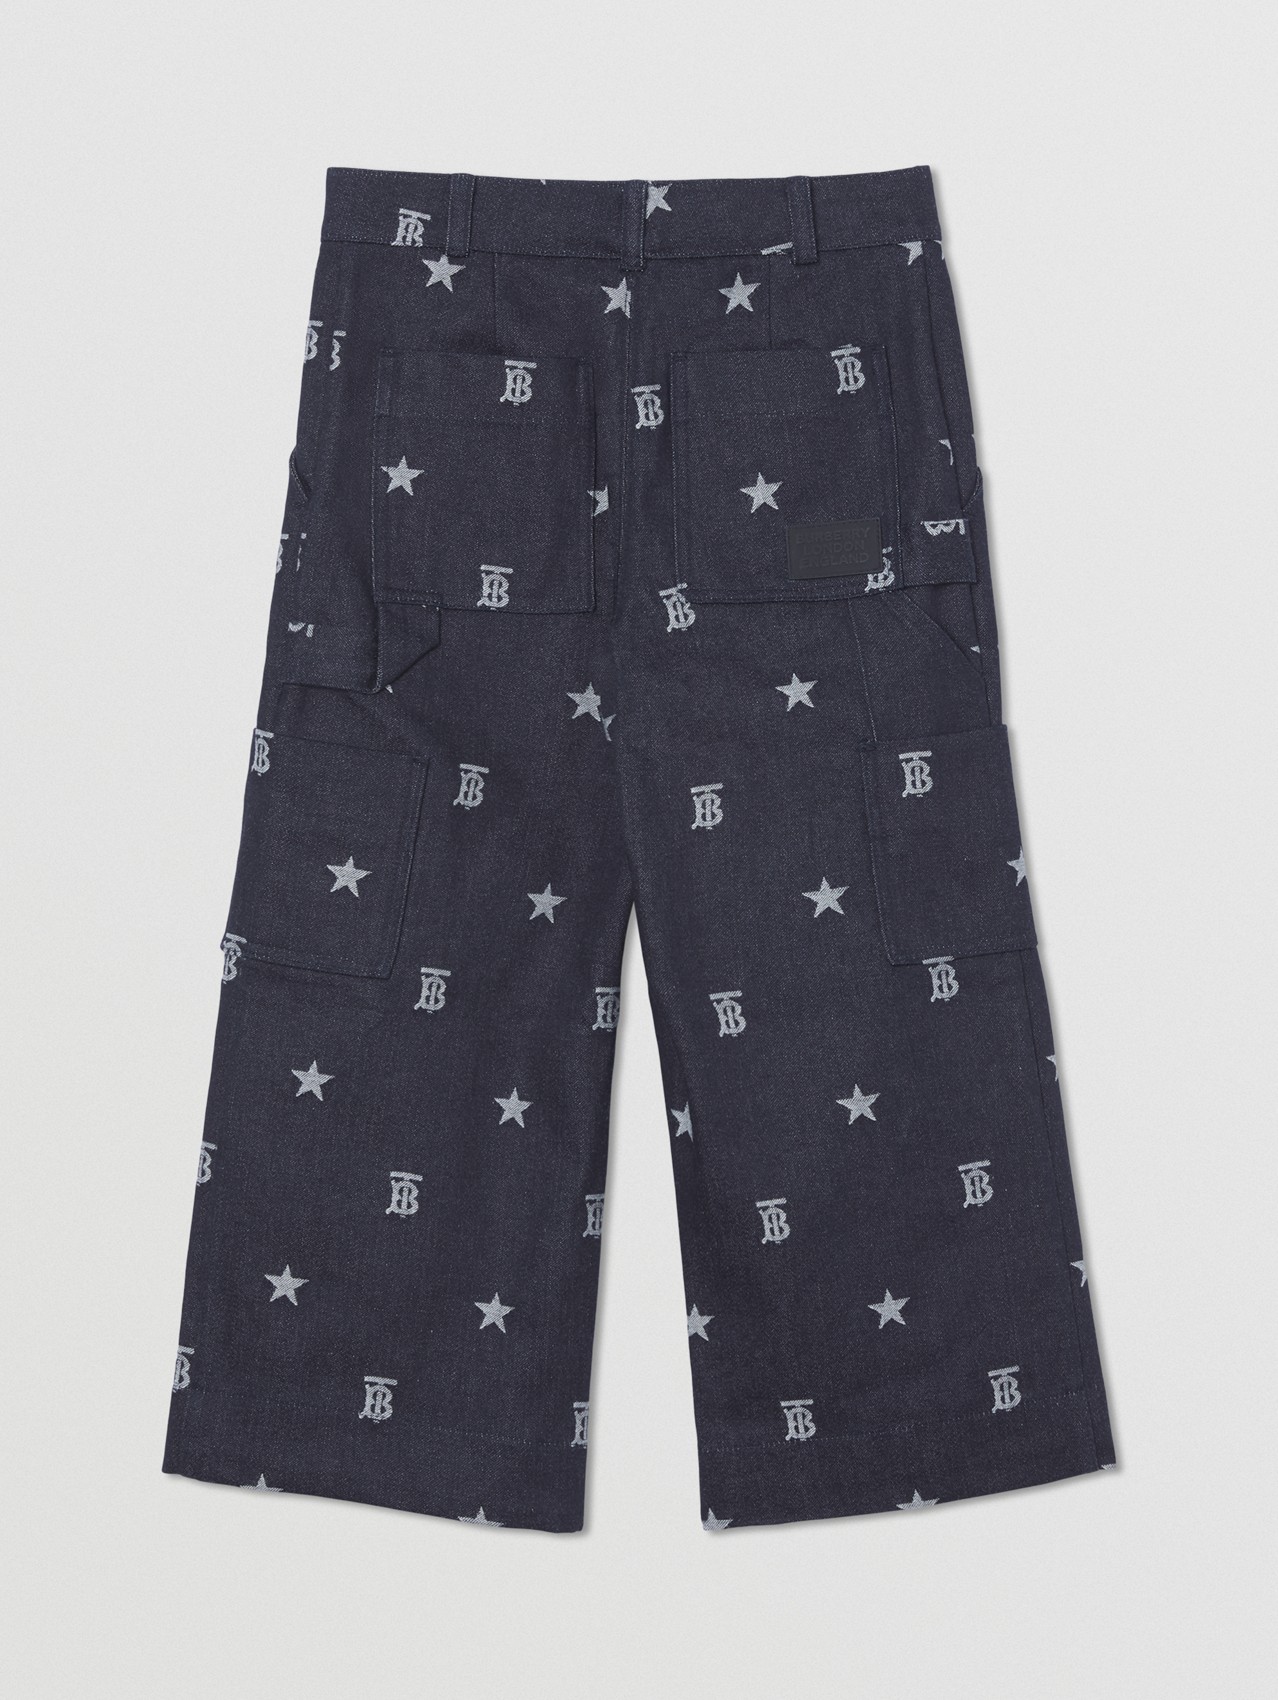 Pantalones en tejido vaquero japonés con estrellas y monogramas (Índigo)